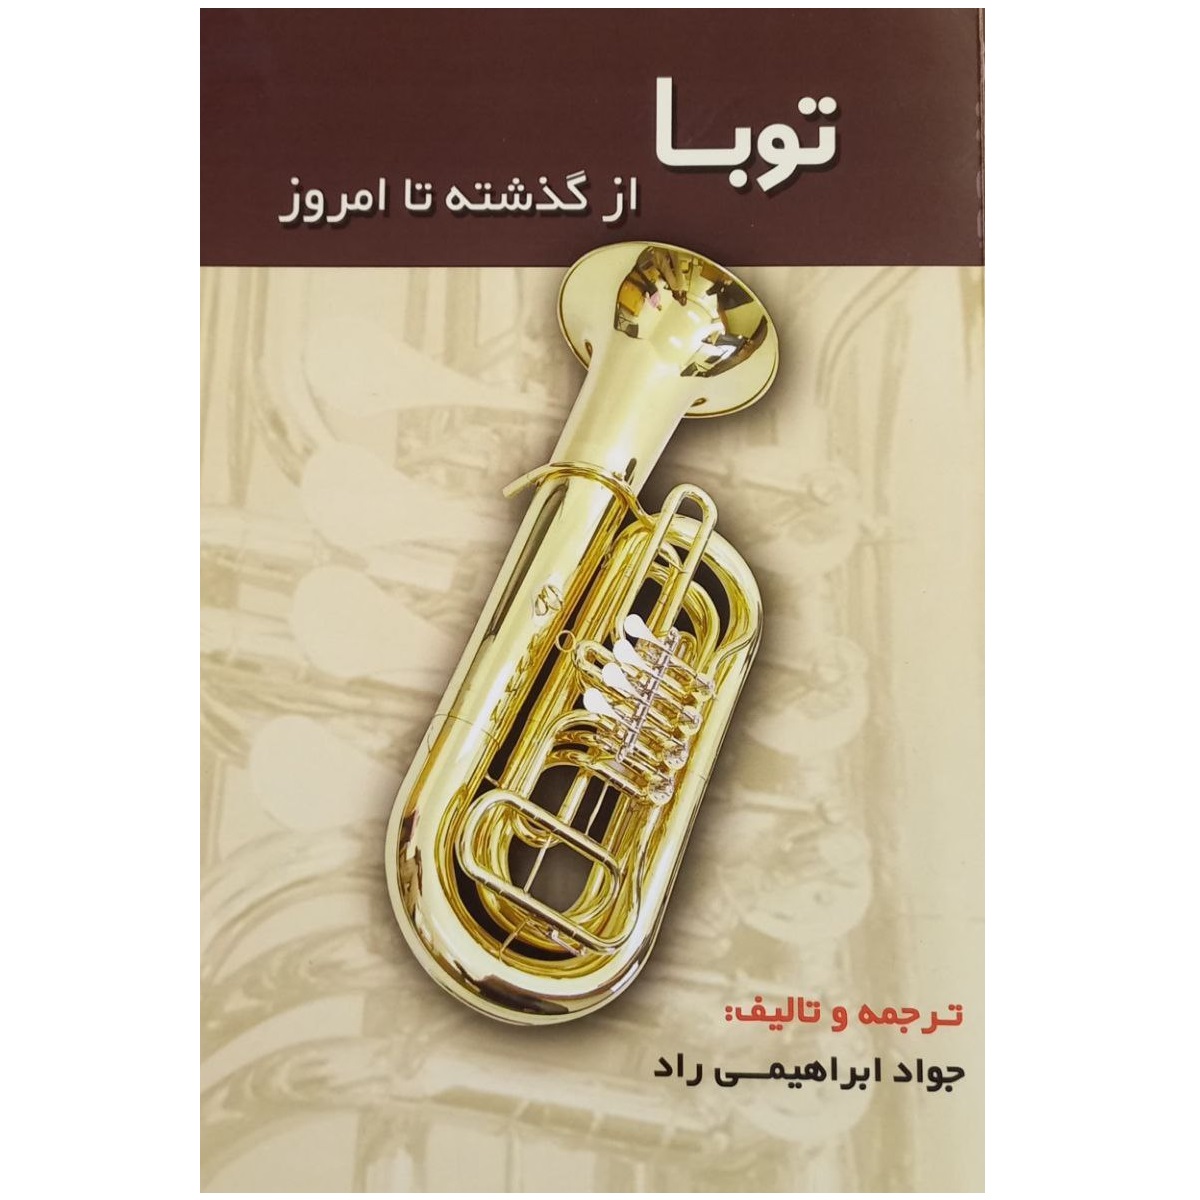 کتاب توبا از گذشته تا امروز اثر جواد ابراهیمی راد انتشارات مشاهير هنر